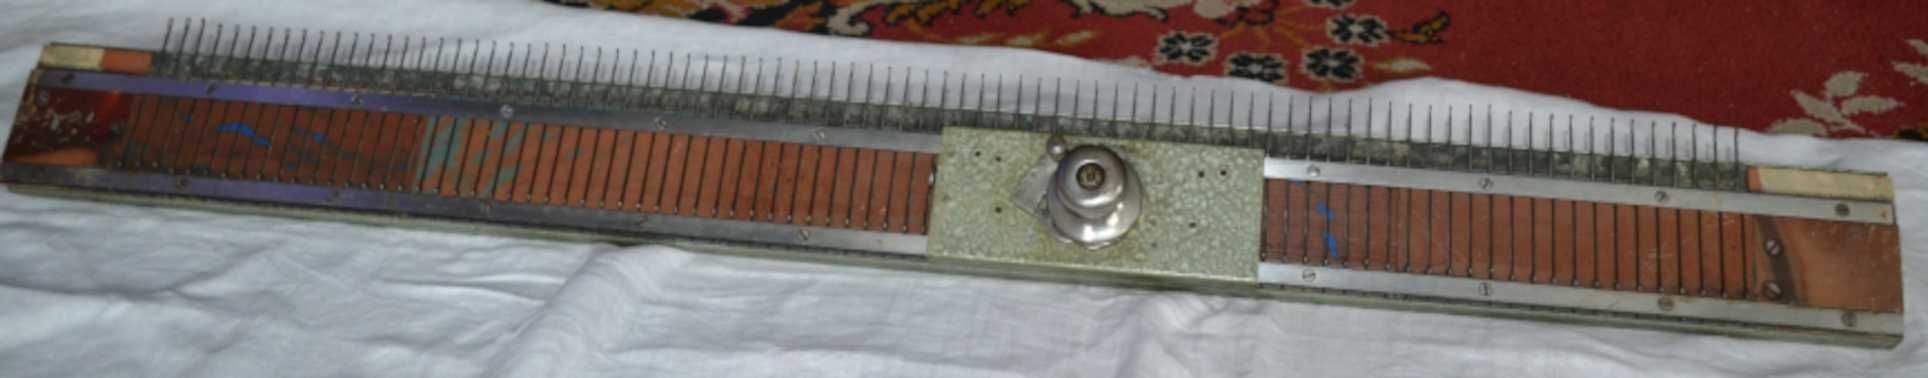 Maszyna dziewiarska (kaszubka,1965) z dodatkową szyną oraz akcesoriami